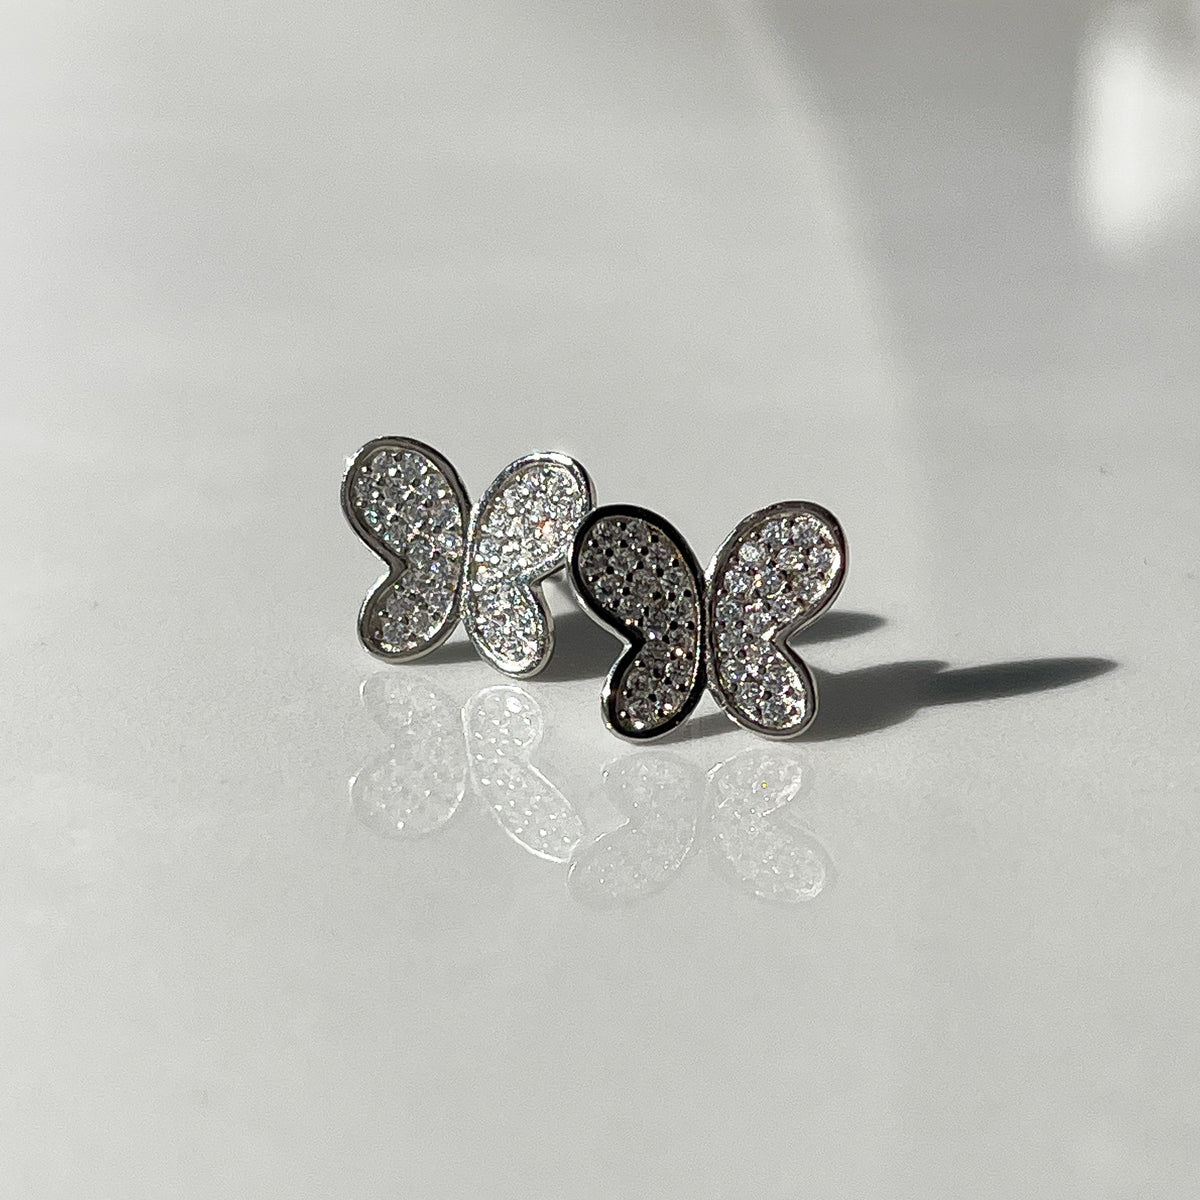 The Butterfly Stud Earrings